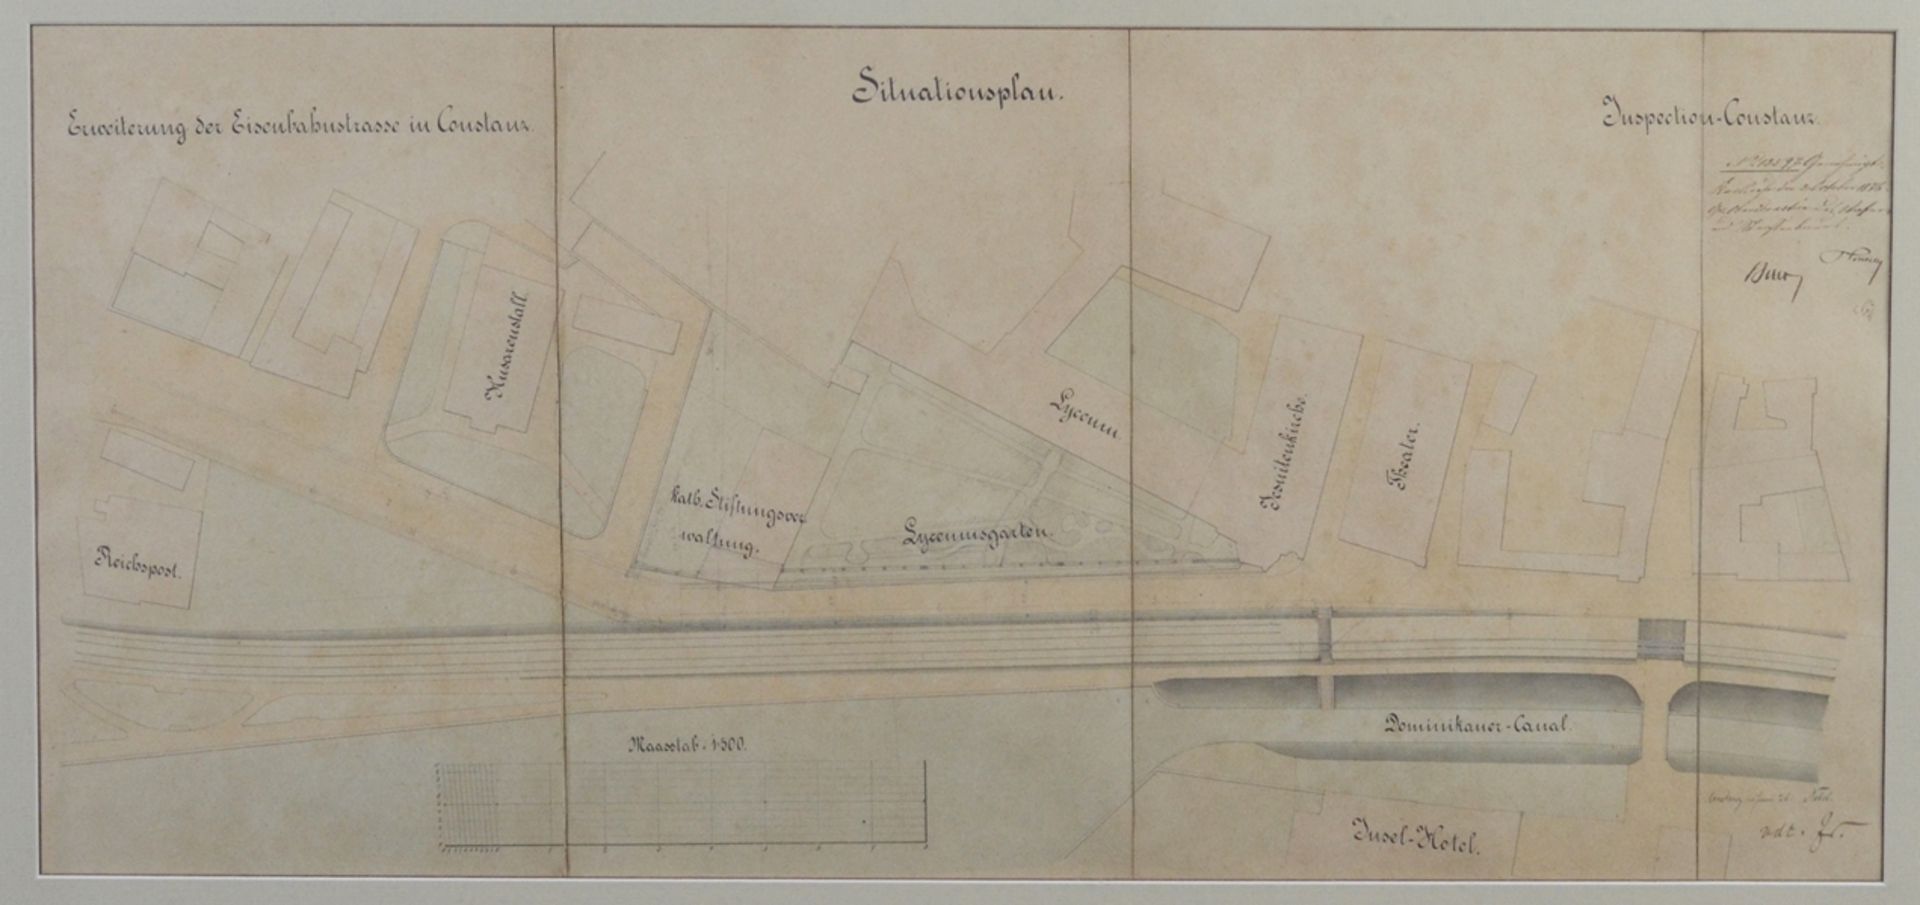 Situationsplan zur Erweiterung der Eisenbahnstrasse in Constanz, "Inspection-Constanz",